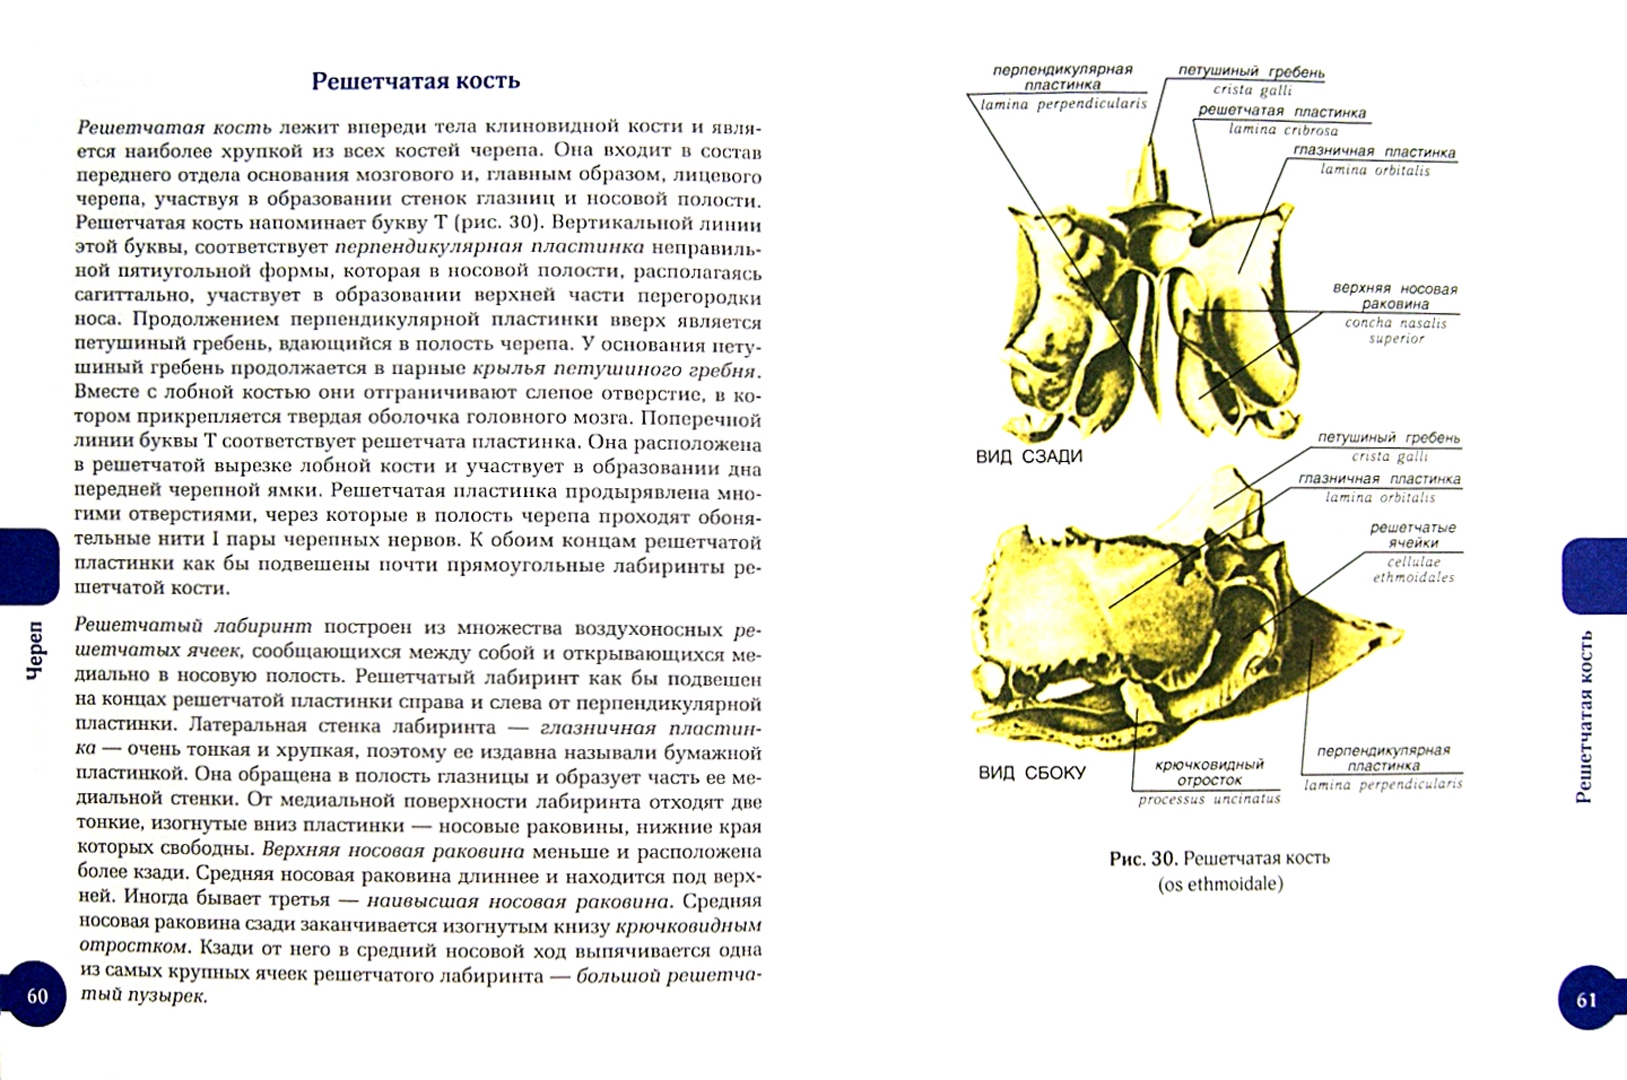 Иллюстрация 1 из 9 для Костная система человека - Билич, Крыжановский, Зигалова | Лабиринт - книги. Источник: Лабиринт